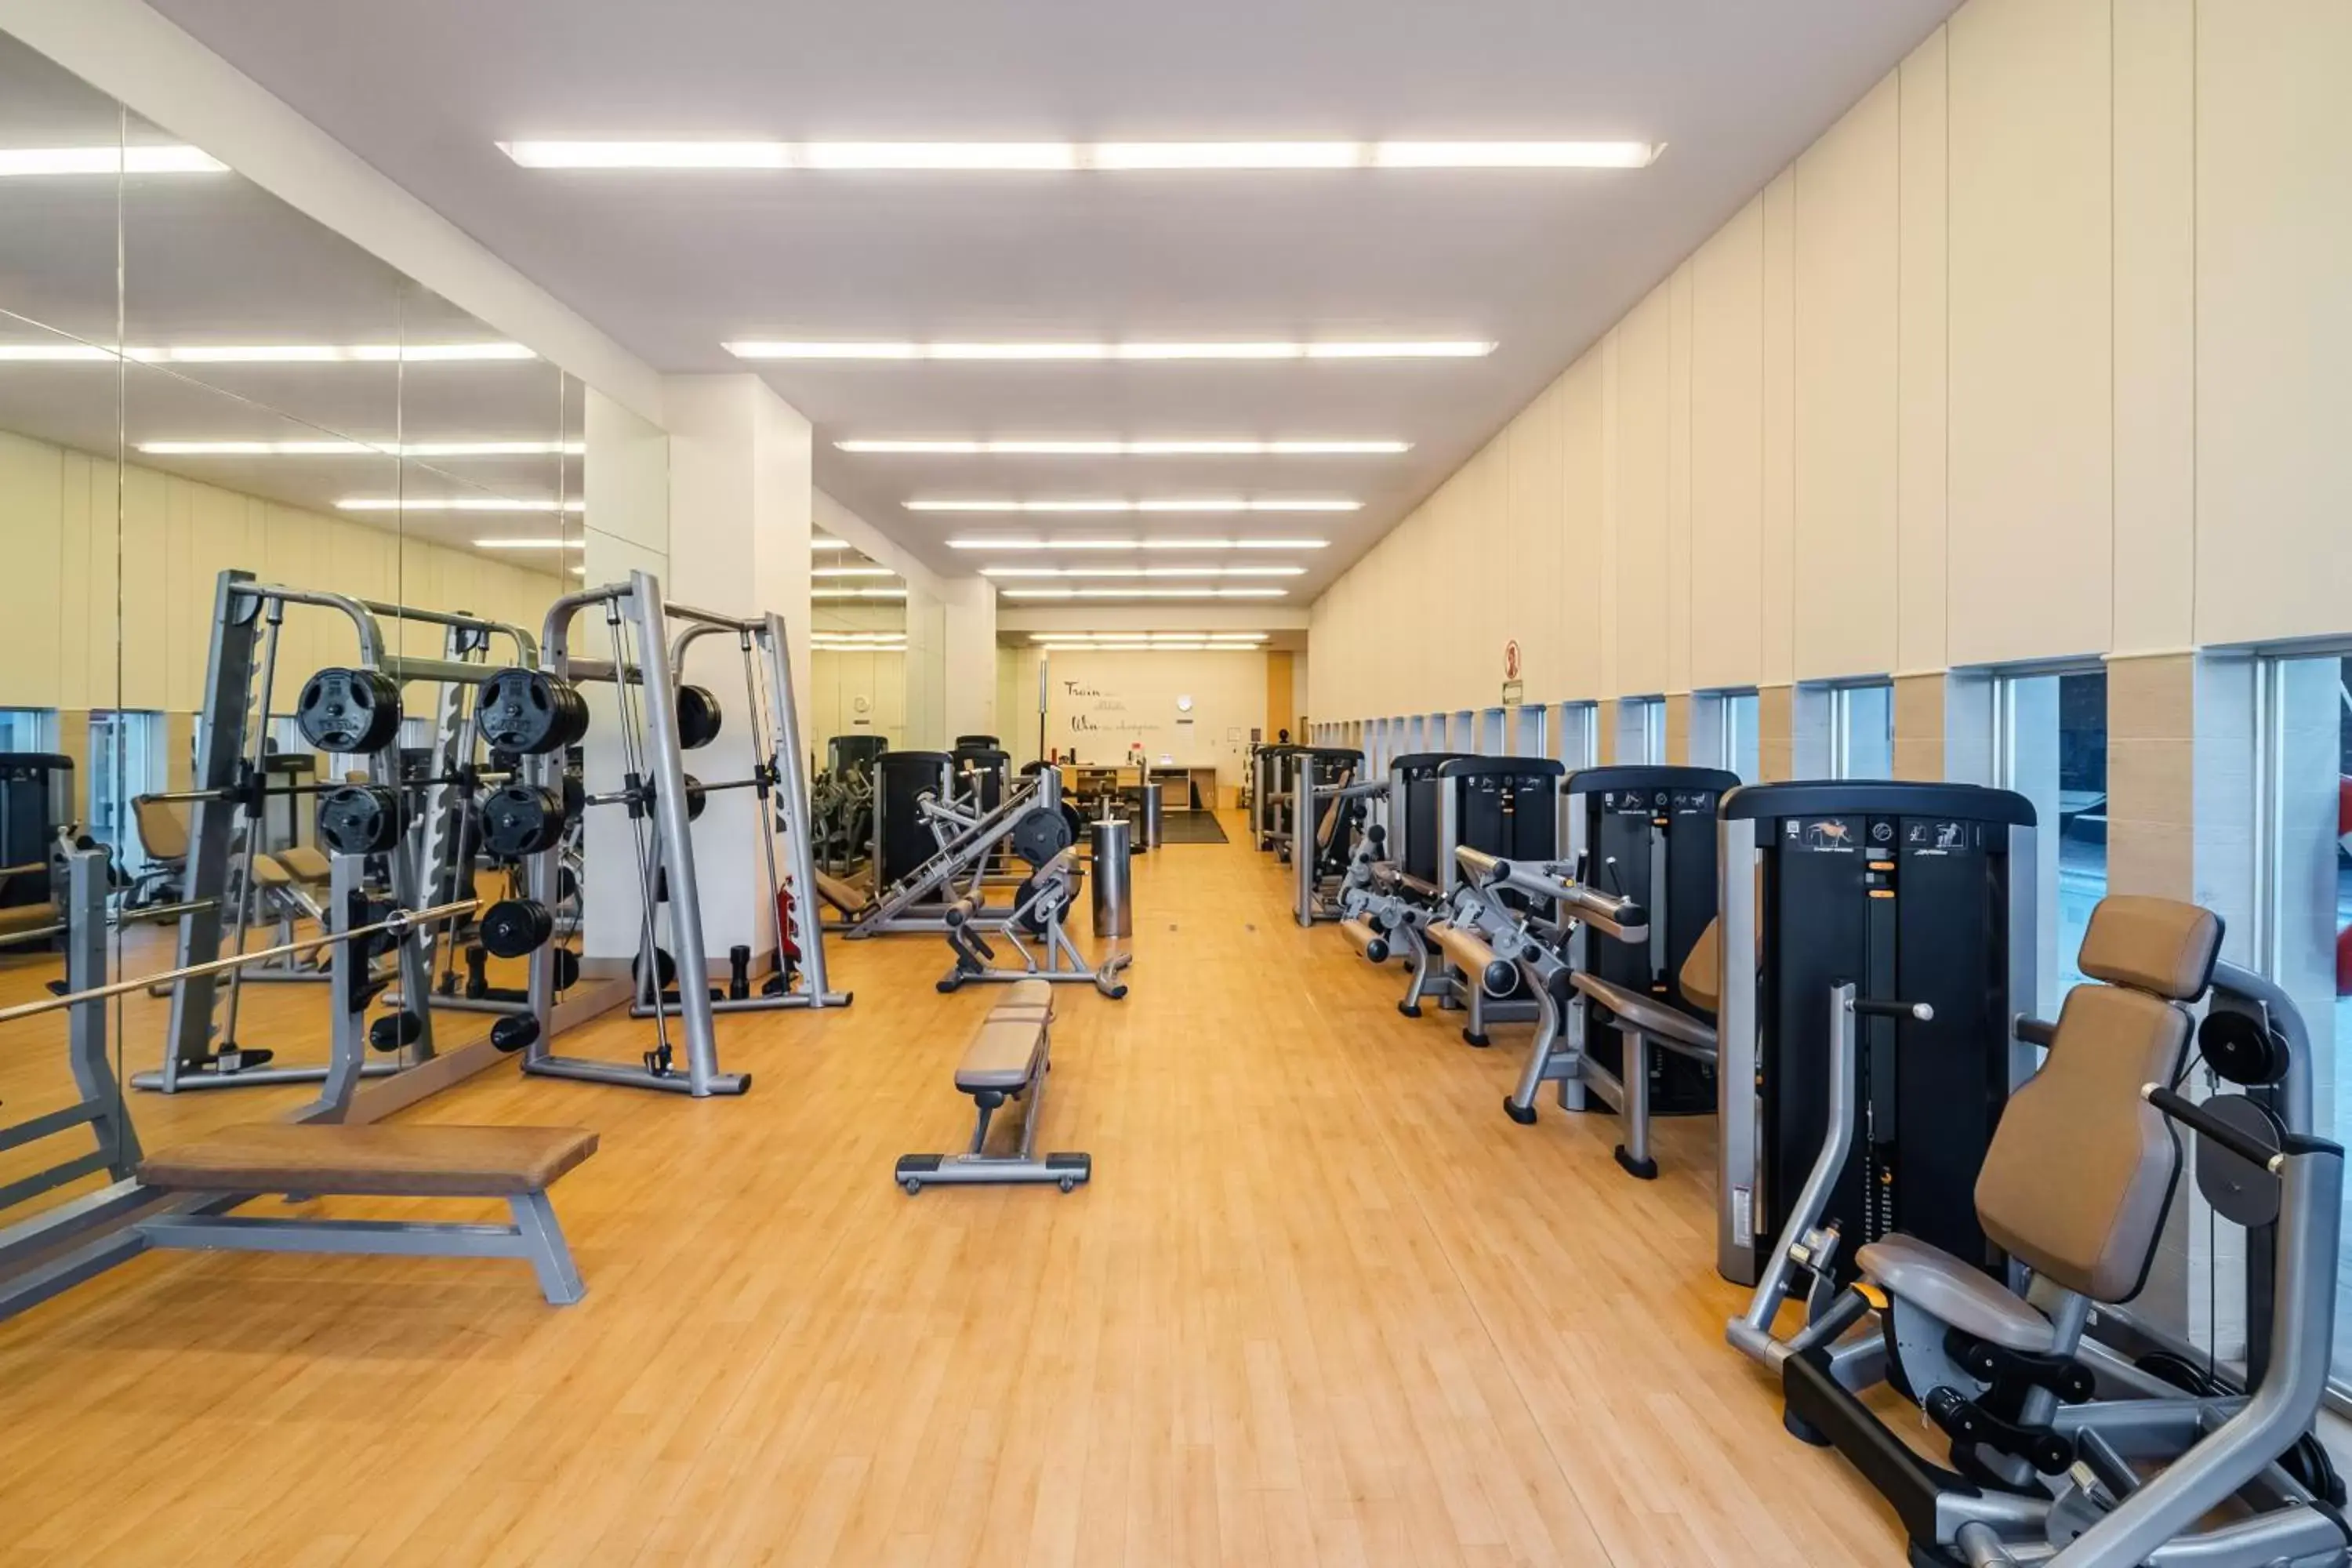 Fitness centre/facilities, Fitness Center/Facilities in Hyatt Regency Mexico City